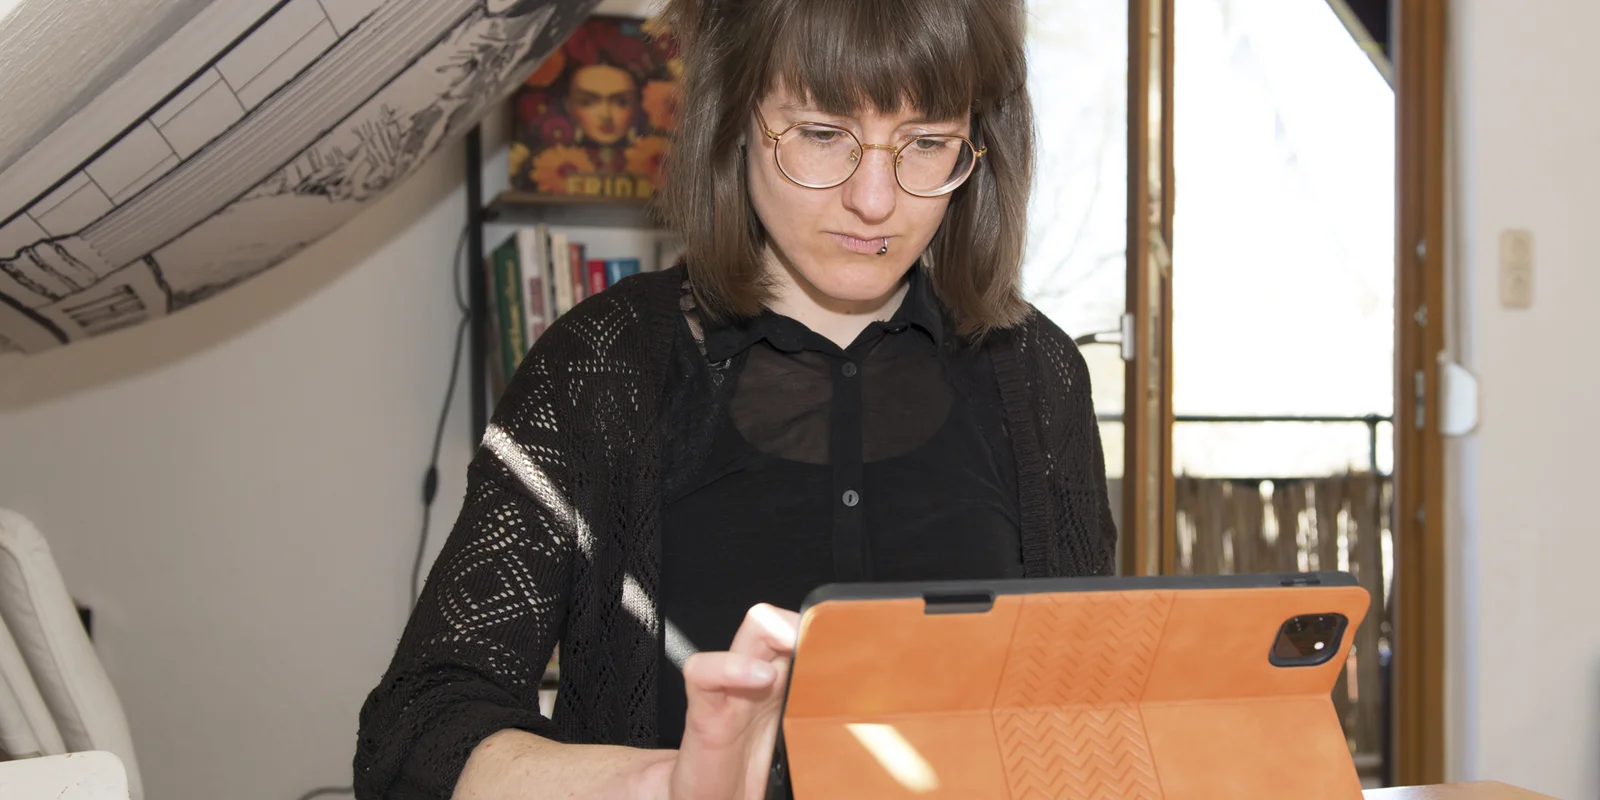 Laura Finke sitzt an einem Tisch auf dem viele Illustrationen liegen und arbeitet an einem Tablet.